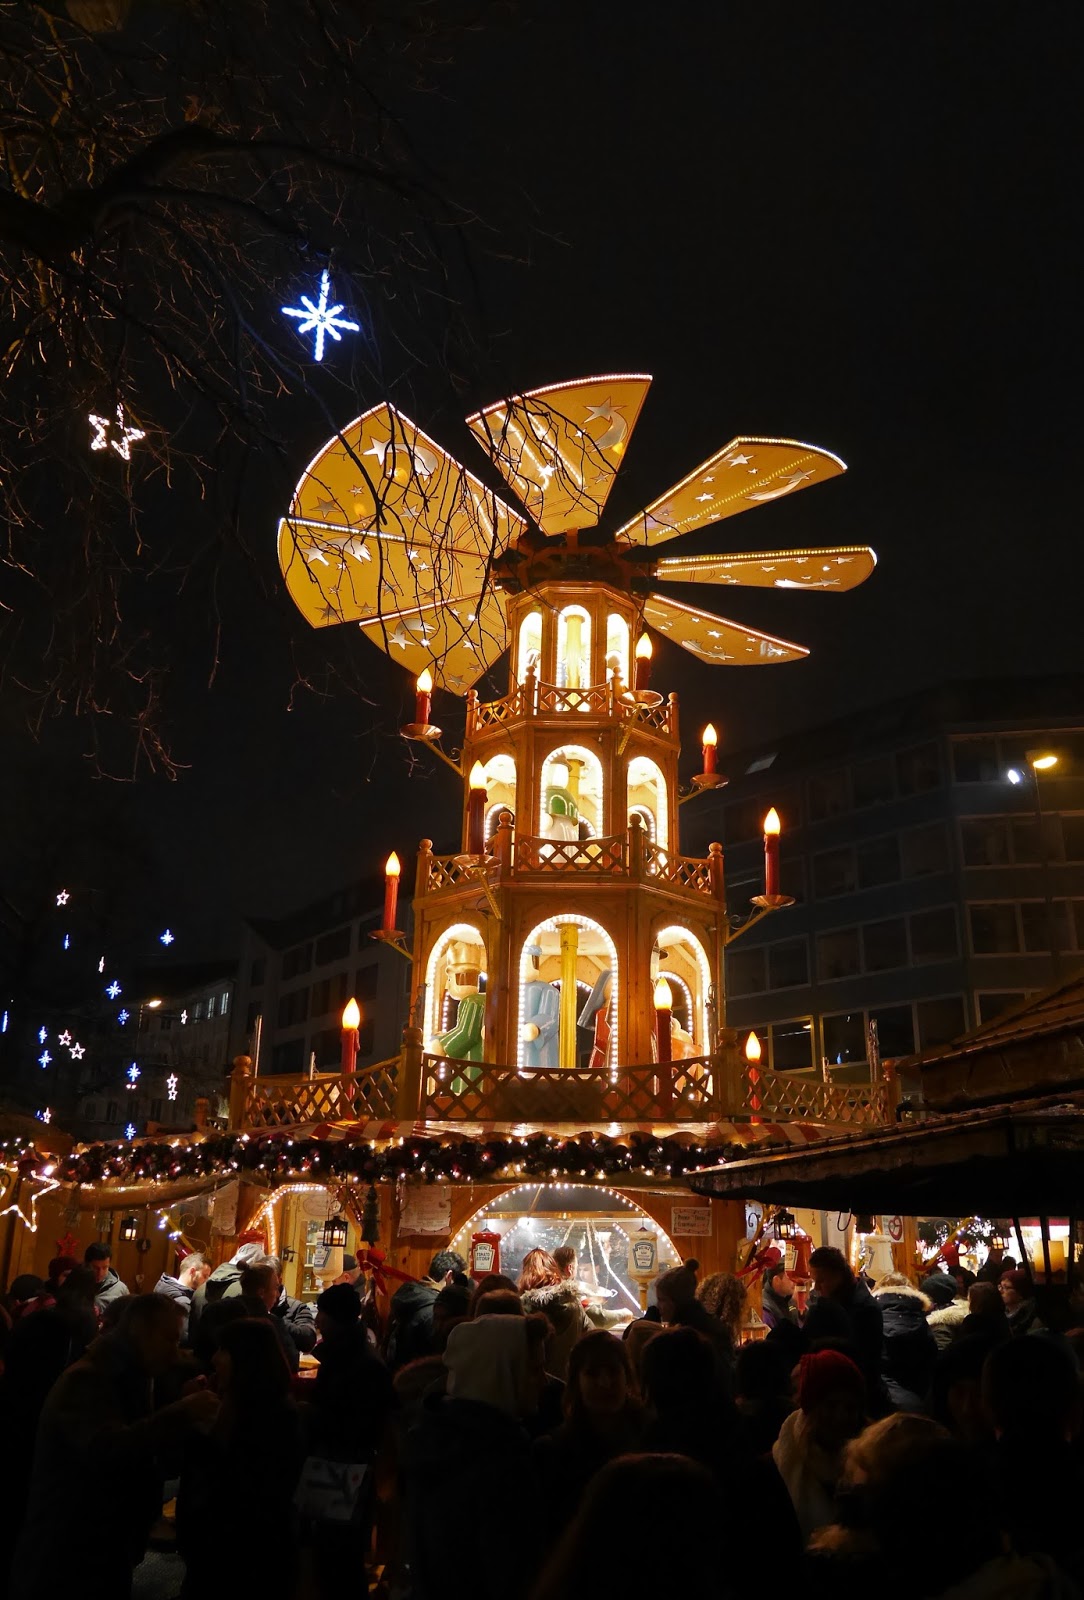 Munich Christmas Markets at night